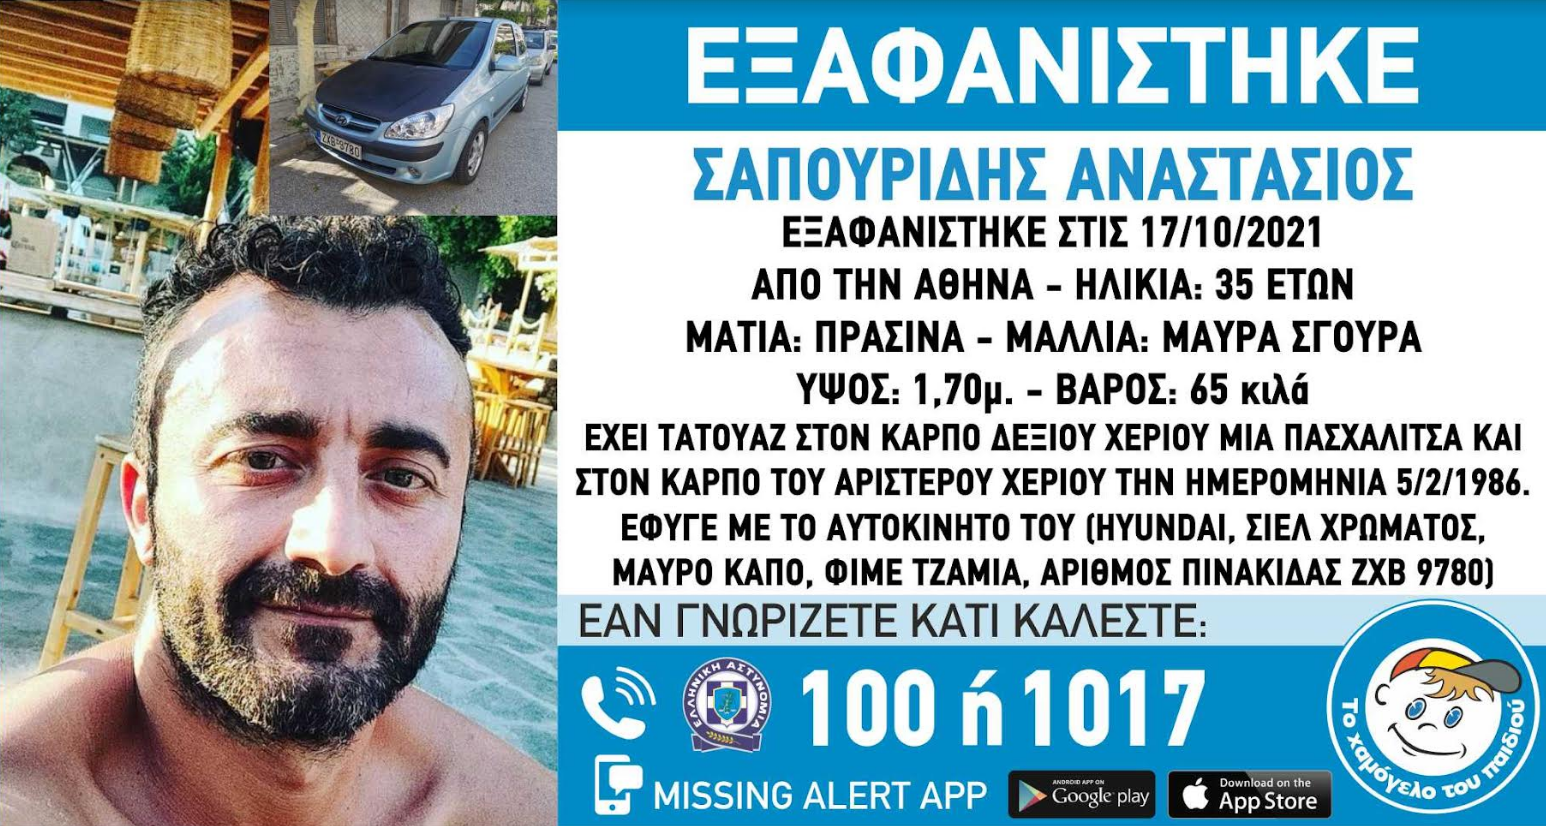 Συναγερμός για την εξαφάνιση του 35χρονου Αναστάσιου από την Αθήνα